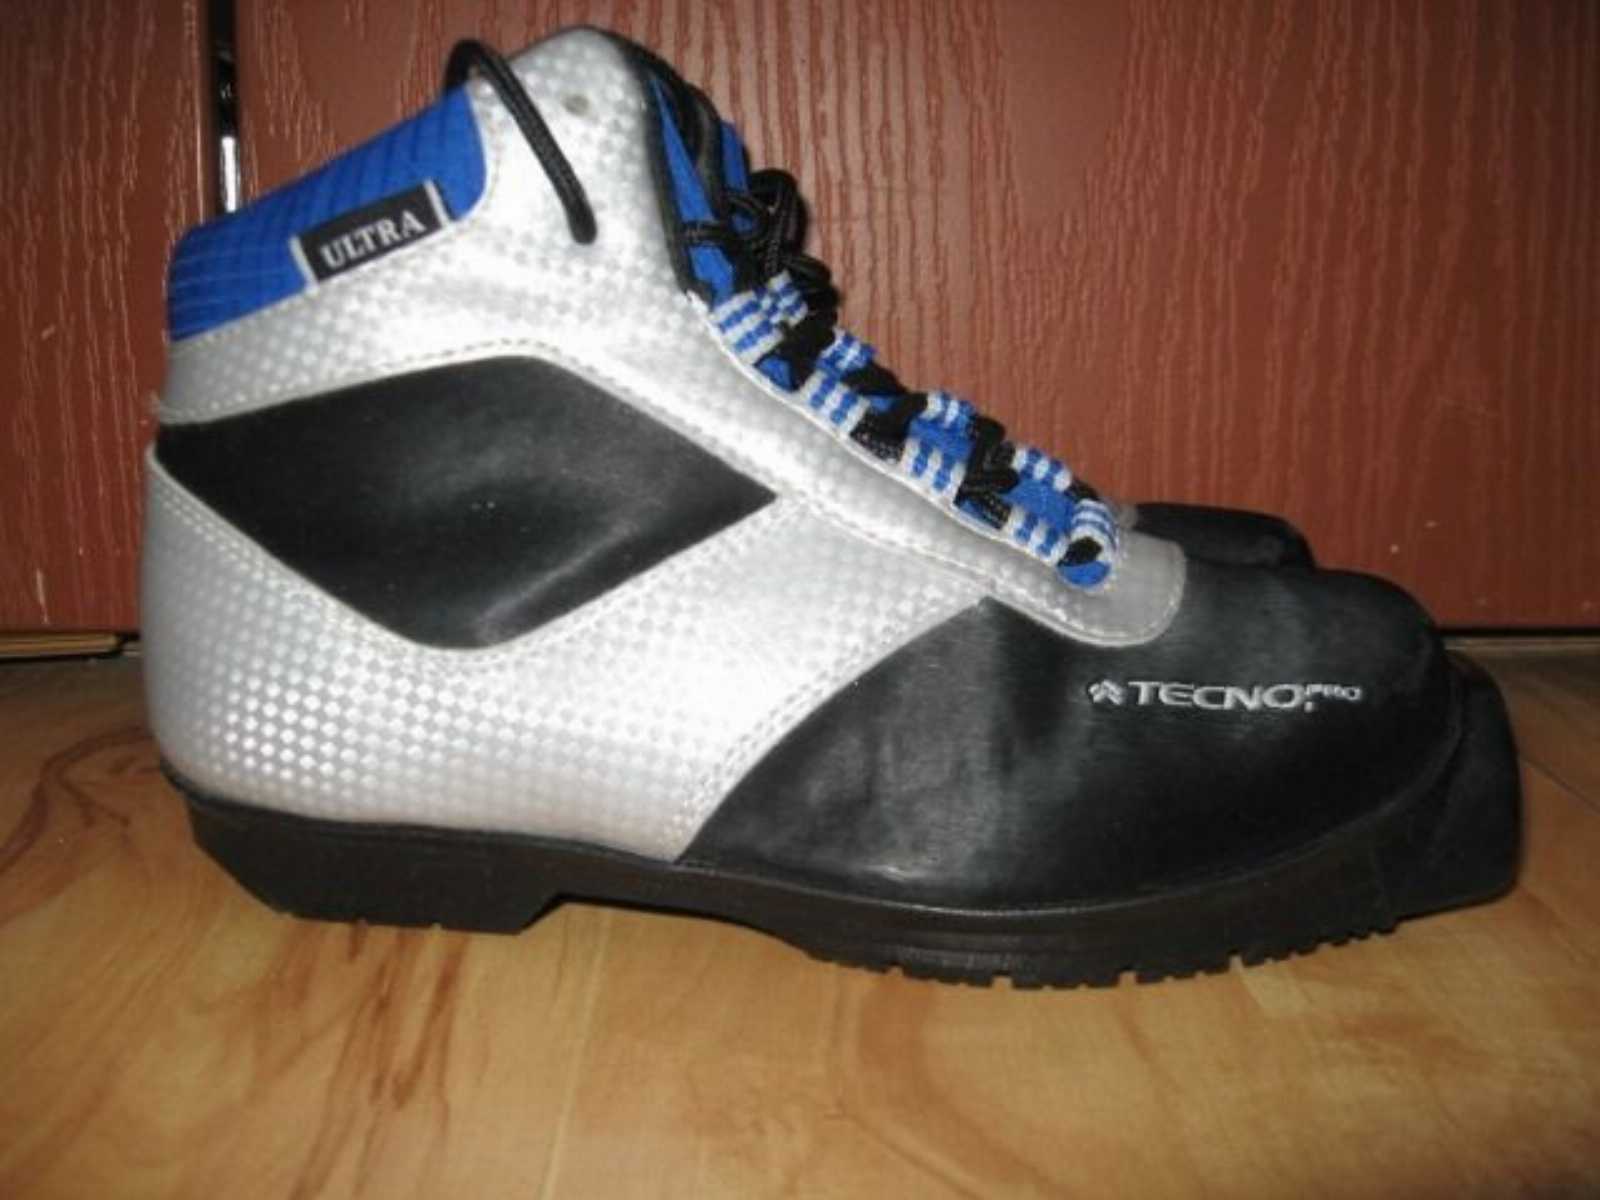 Ботинки детские для беговых лыж Tecno Pro 33 размер. Новые